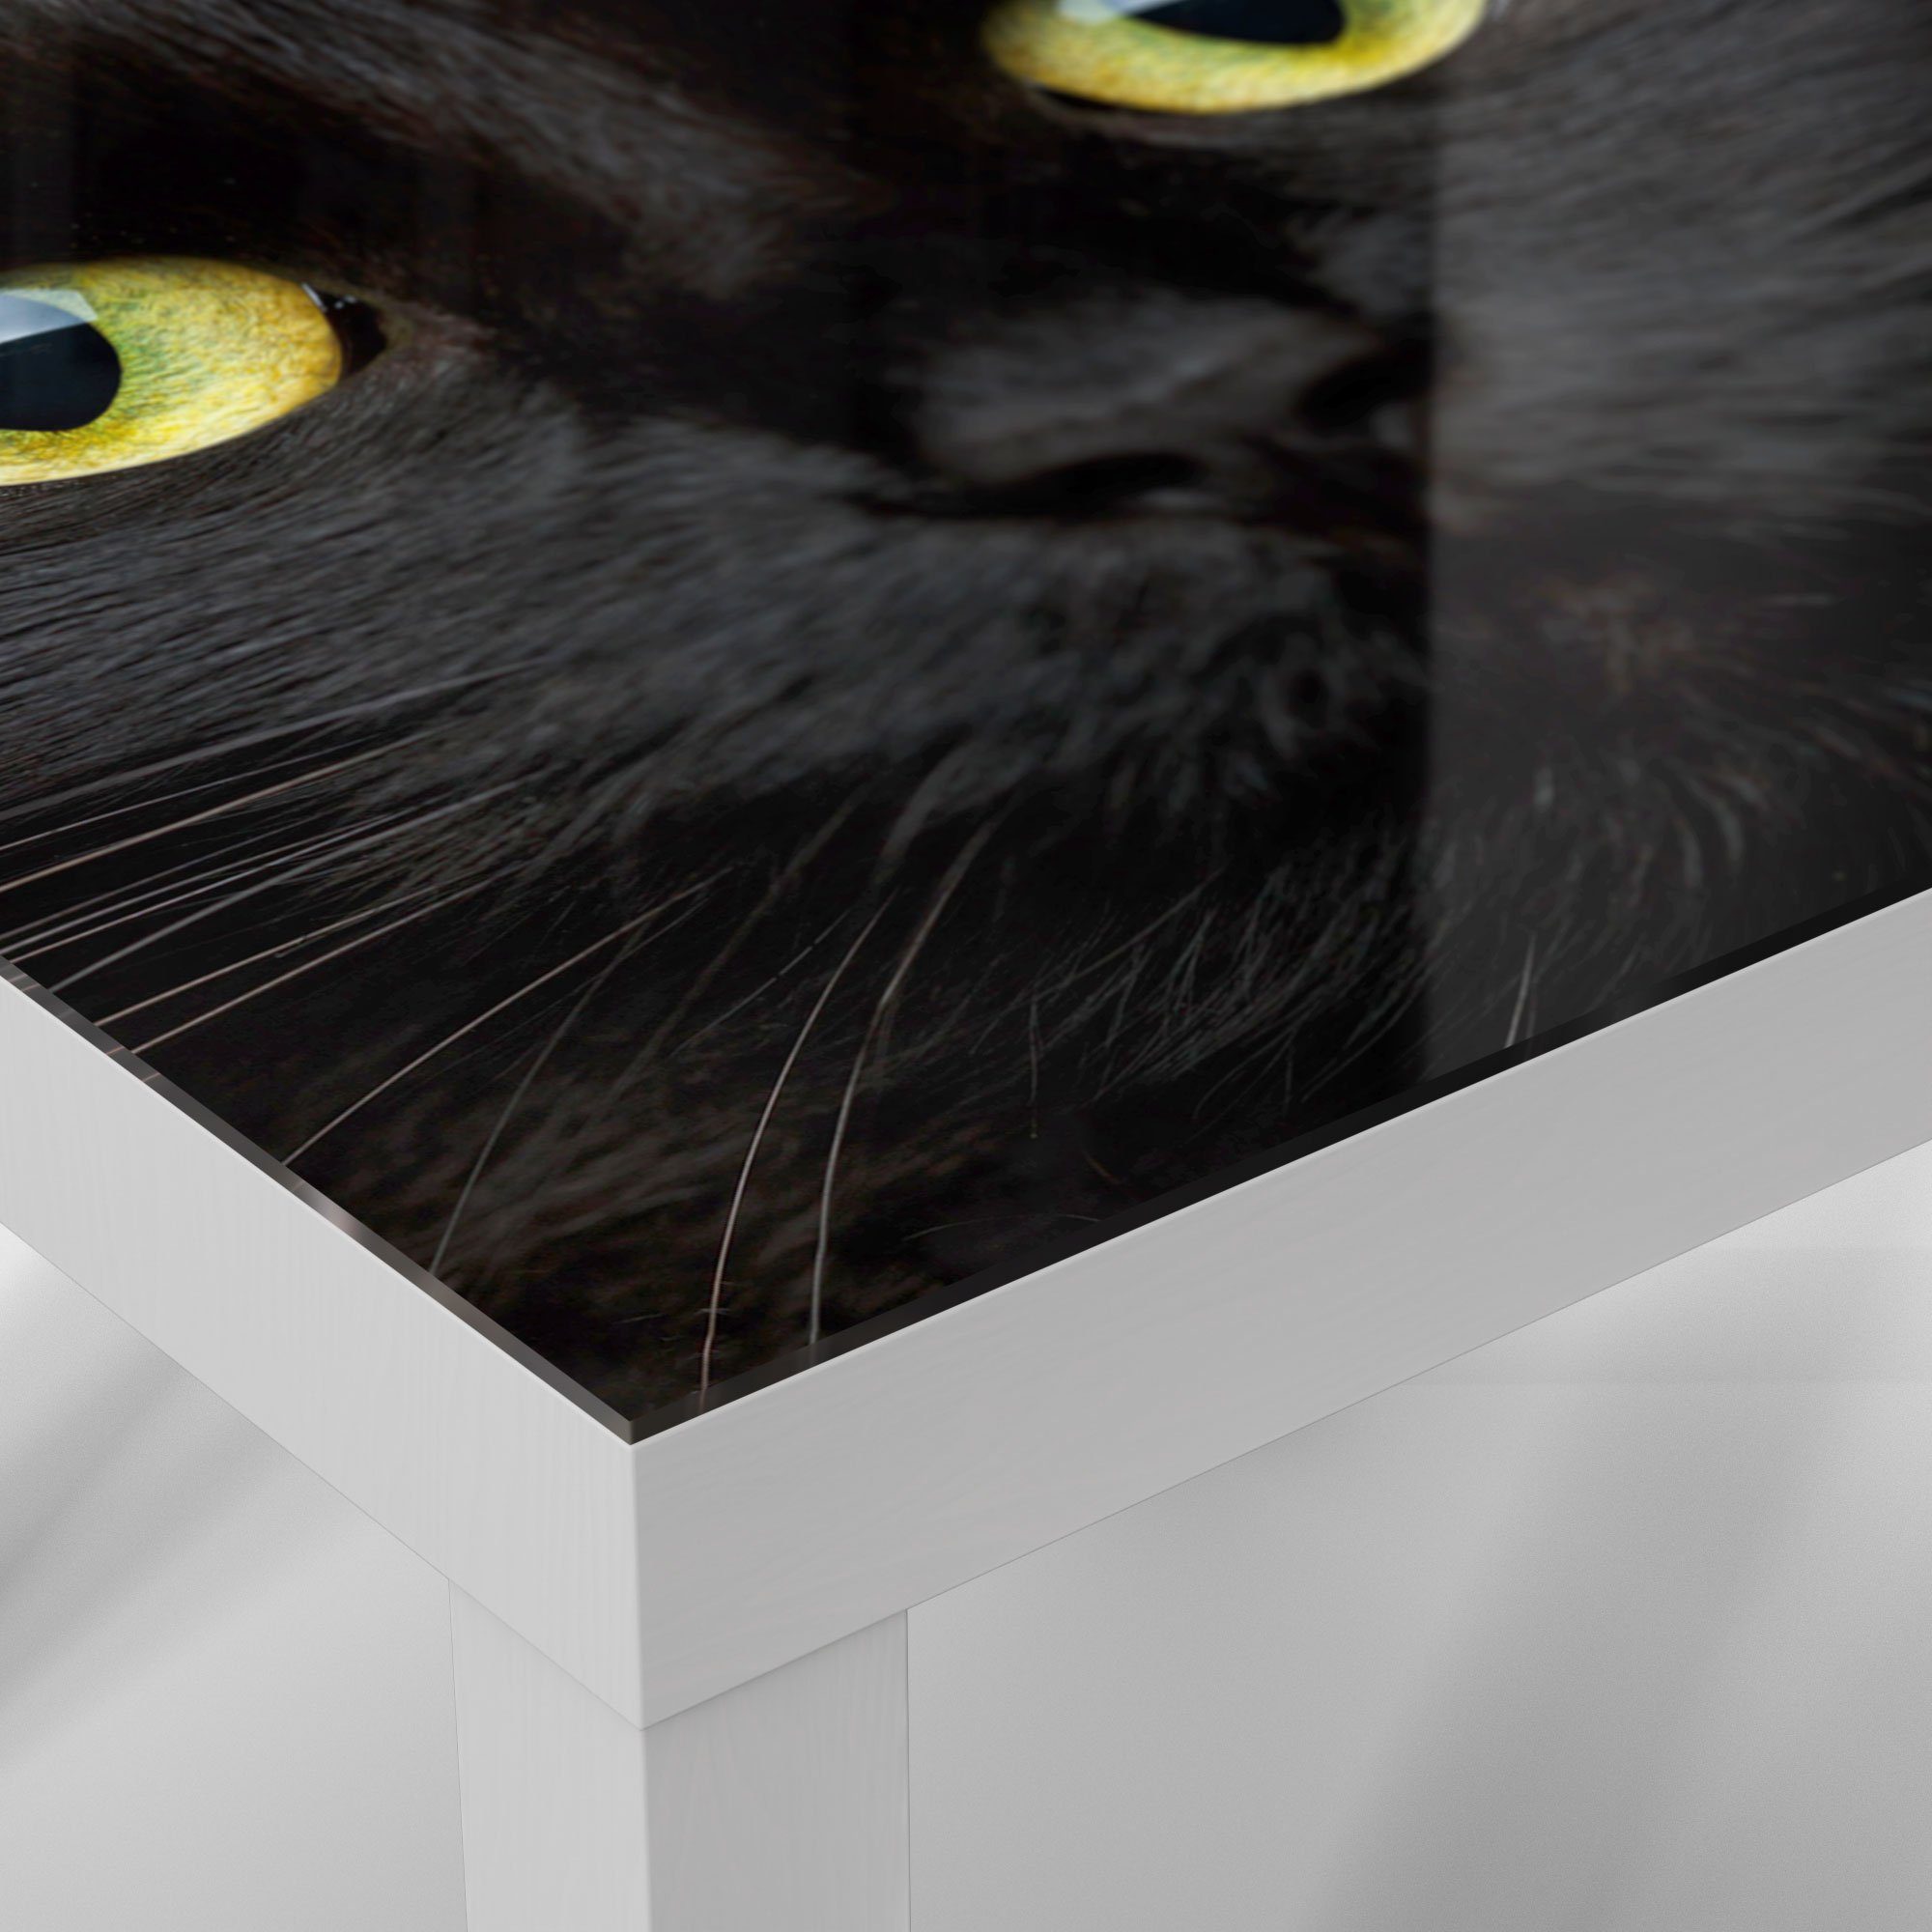 Kätzchens', 'Gesicht Glastisch Weiß DEQORI Couchtisch Beistelltisch modern Glas eines